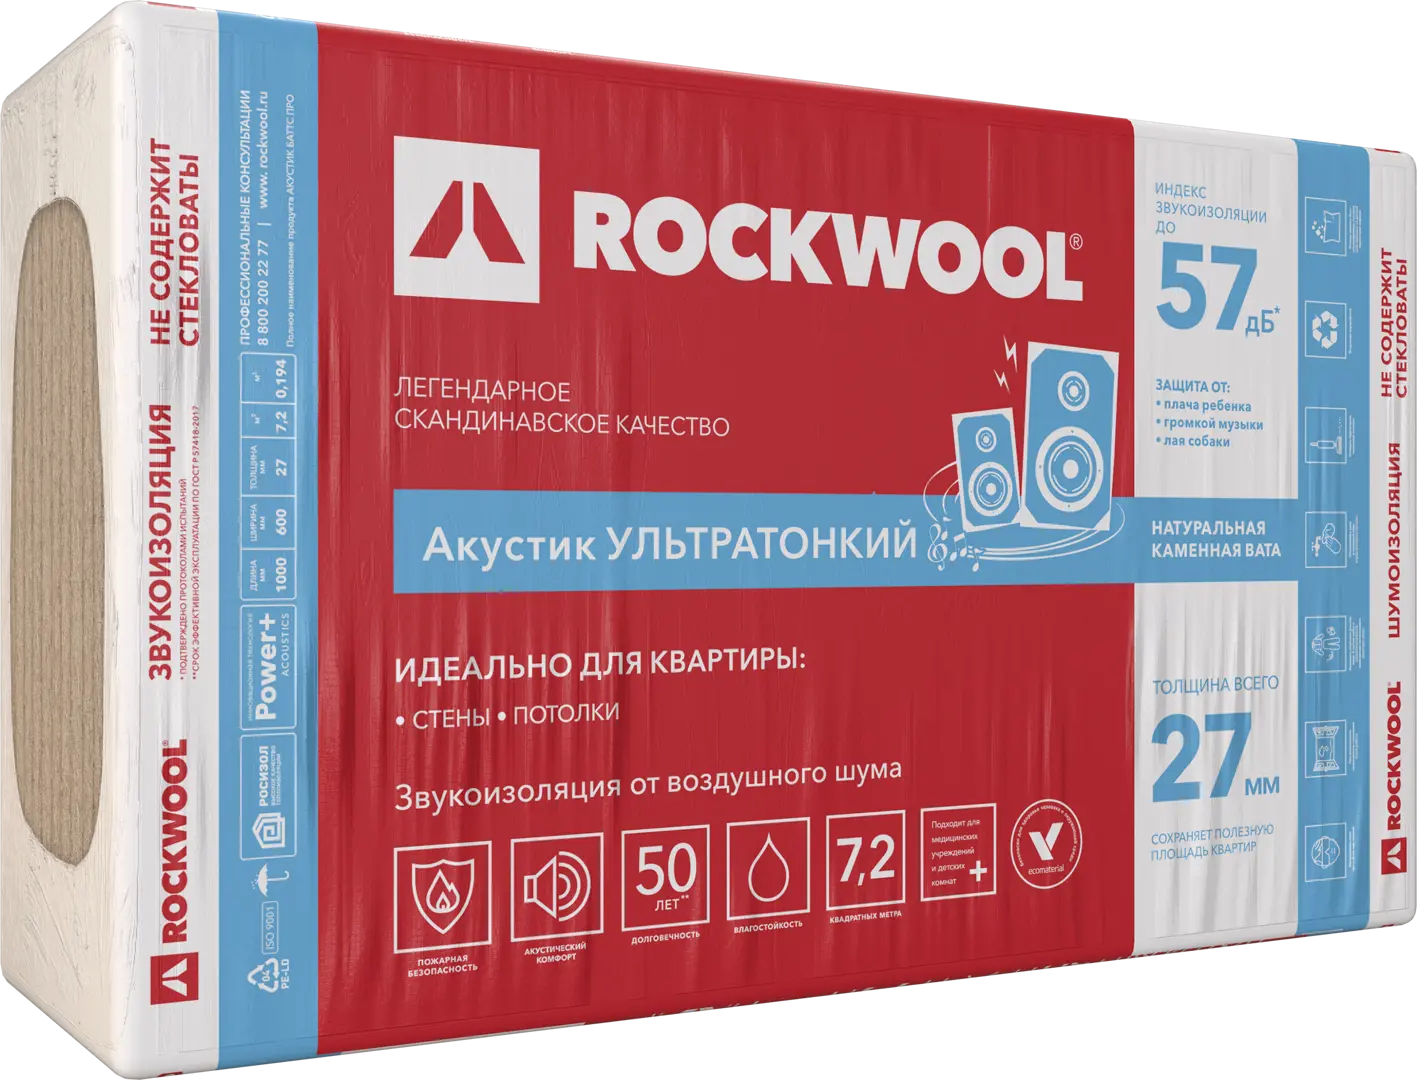 Звукоизоляция Rockwool Акустик ультратонкий 27 мм 7.2 м? звукоизоляция акустикнауф слим плита 27 мм 11 м²